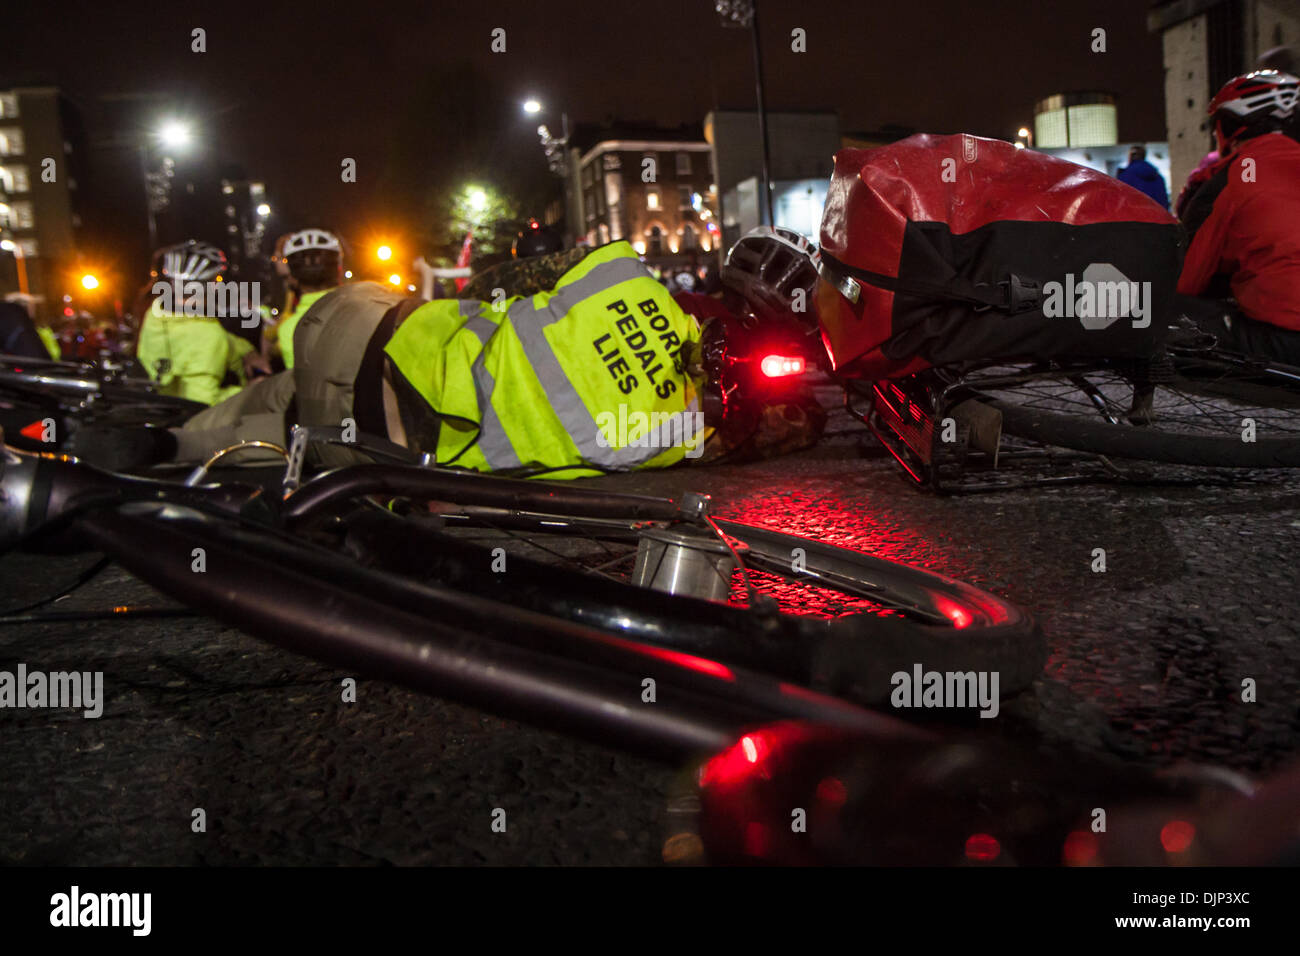 Londres, Reino Unido. El 29 de noviembre de 2013. El manifestante en el piso en un die-in fuera de Transporte de Londres, 29 de noviembre de 2013 Créditos: Zefrog/Alamy Live News Foto de stock